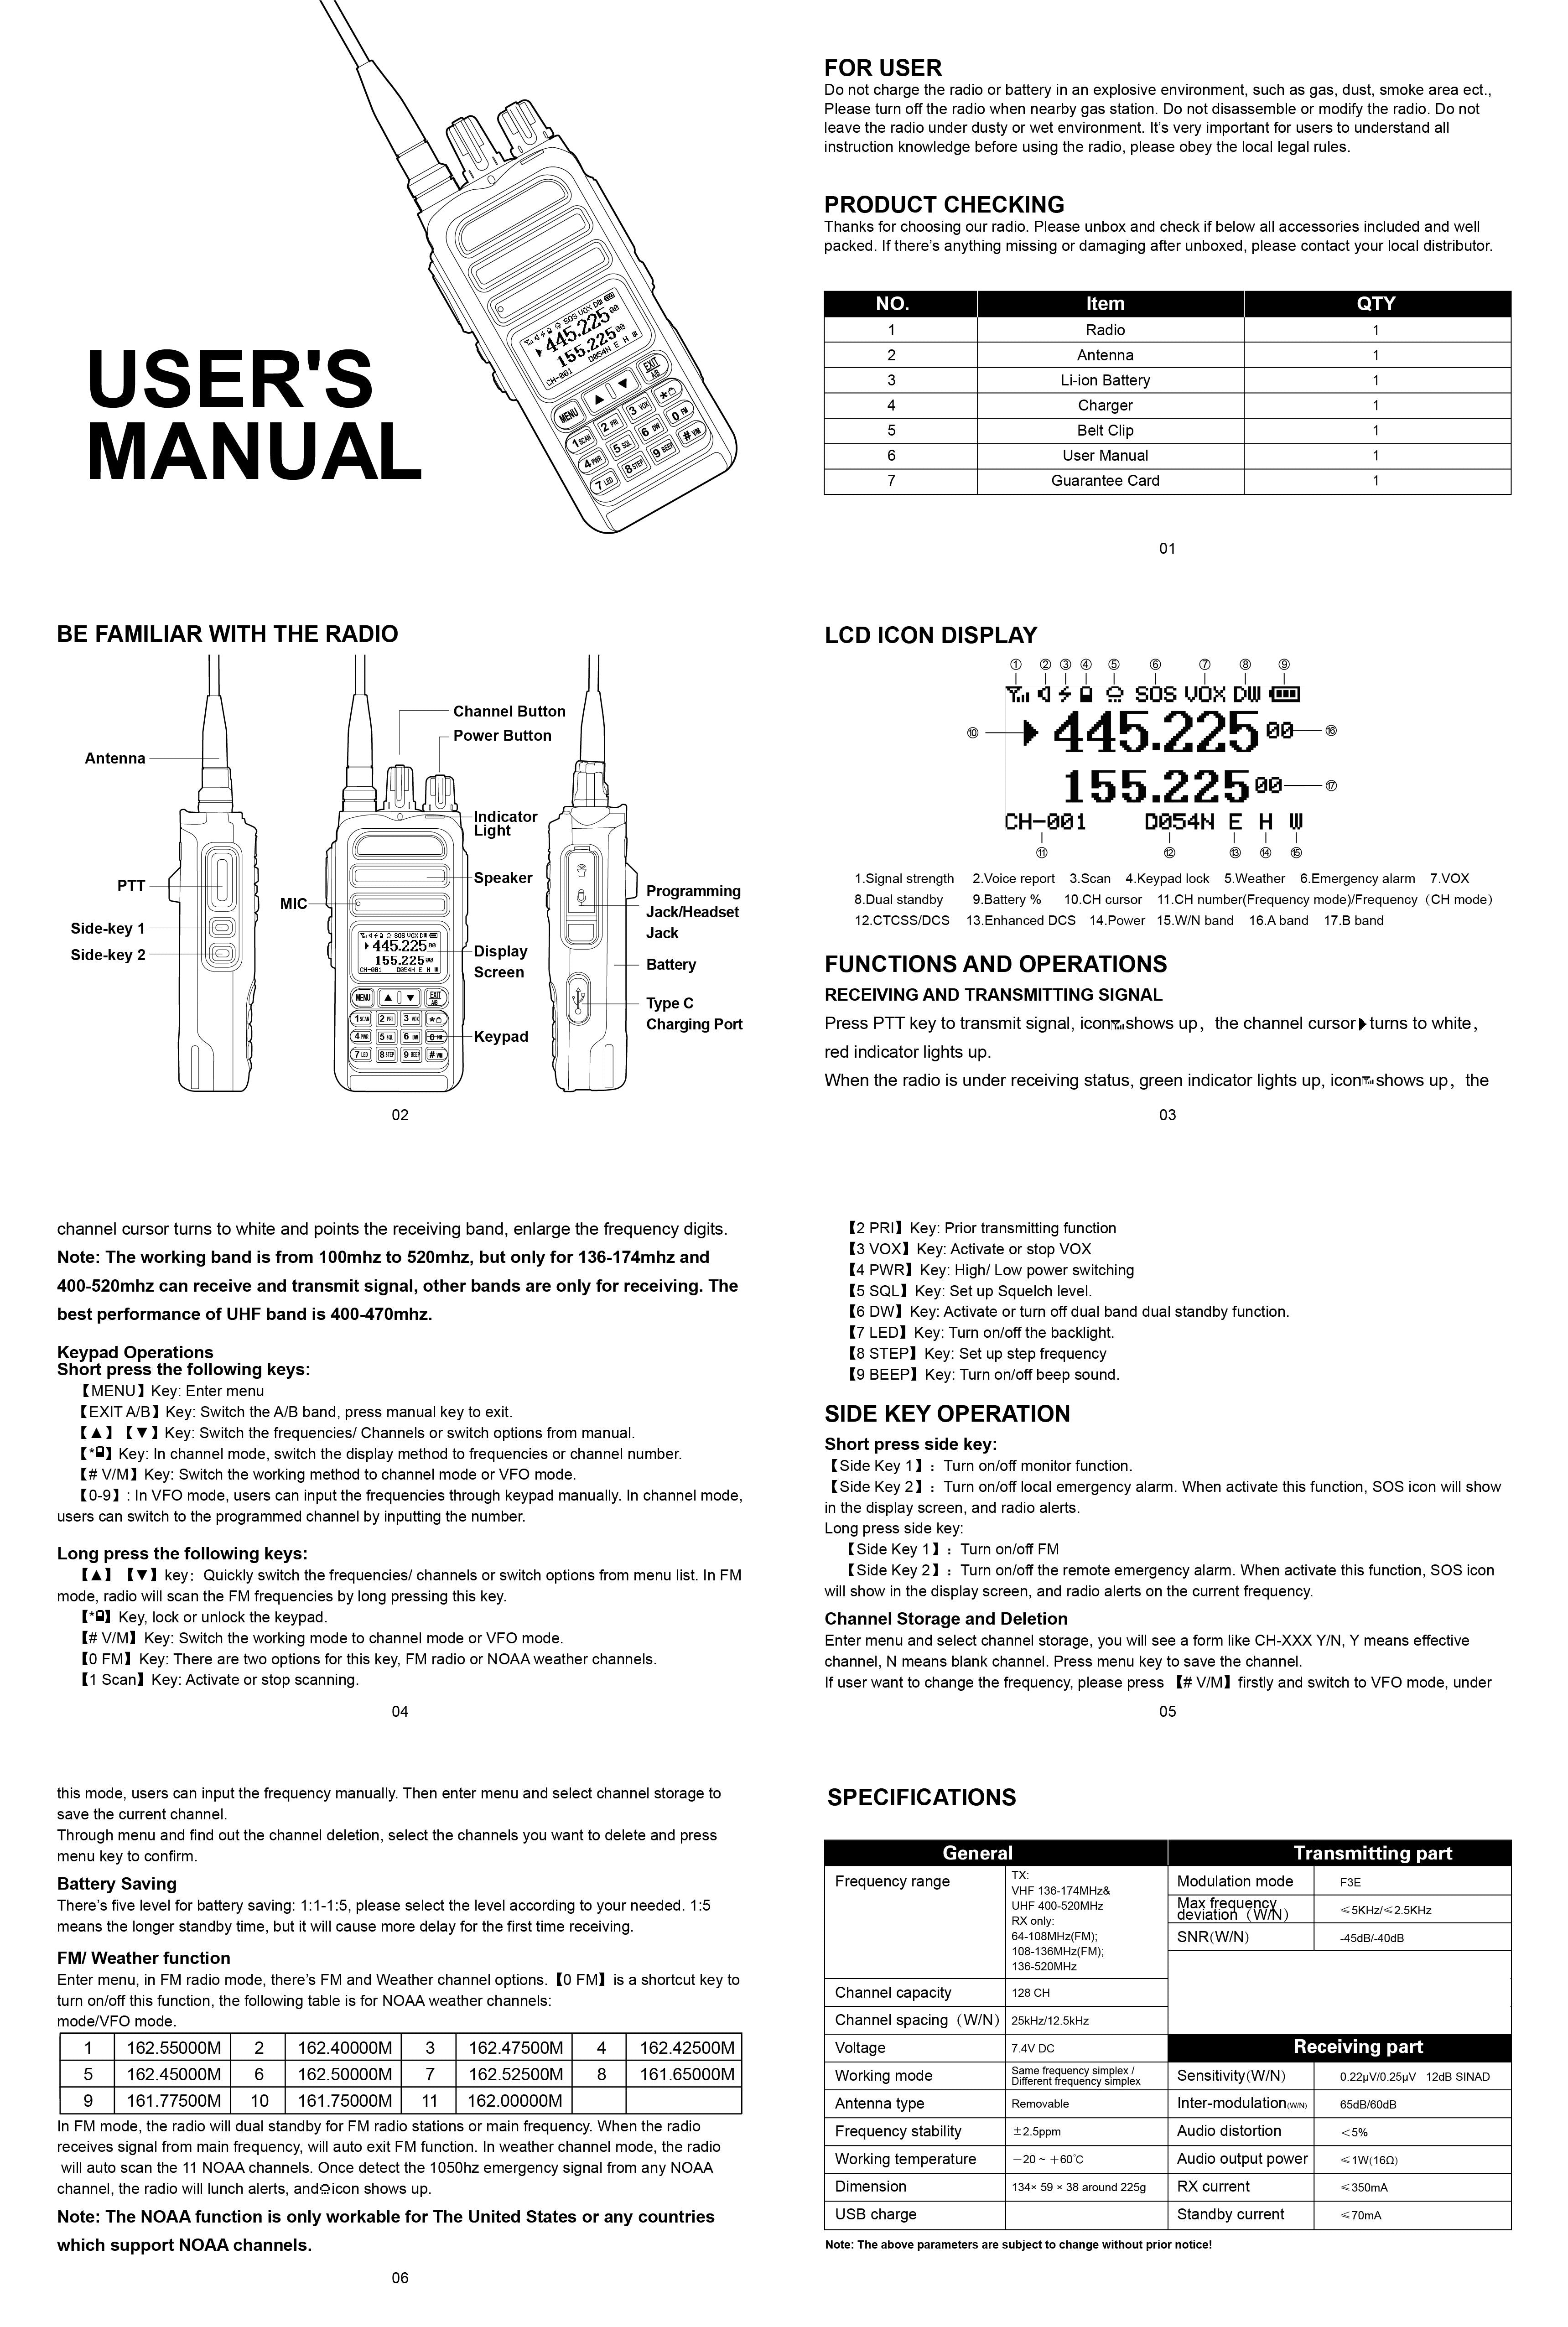 T5 Users Manual Users Manual  User manual, Manual, Pairing guide